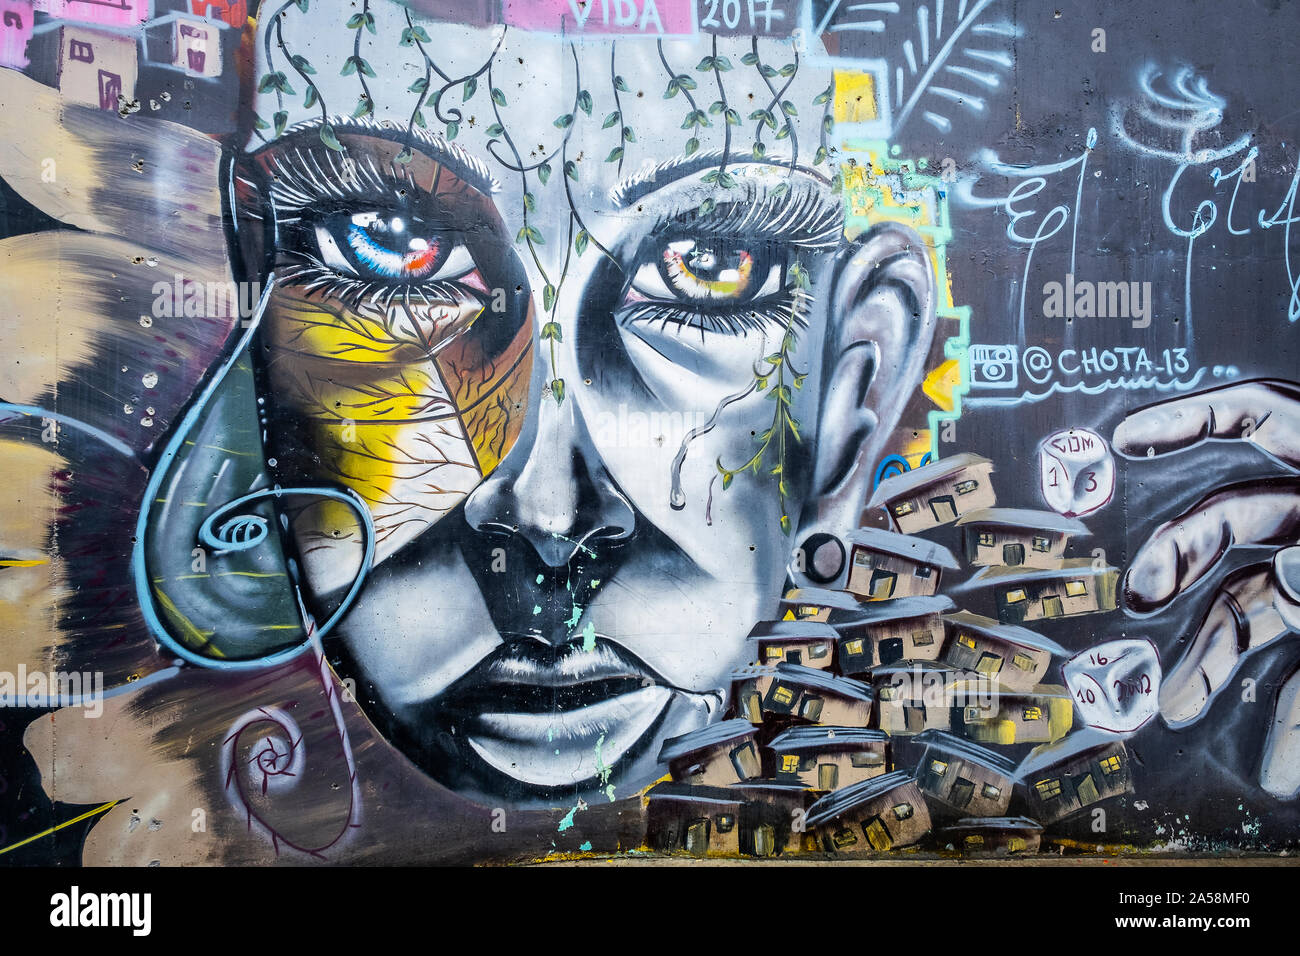 "Orion" par Chota, street art, peinture murale, graffiti, Comuna 13, Medellín, Colombie Banque D'Images